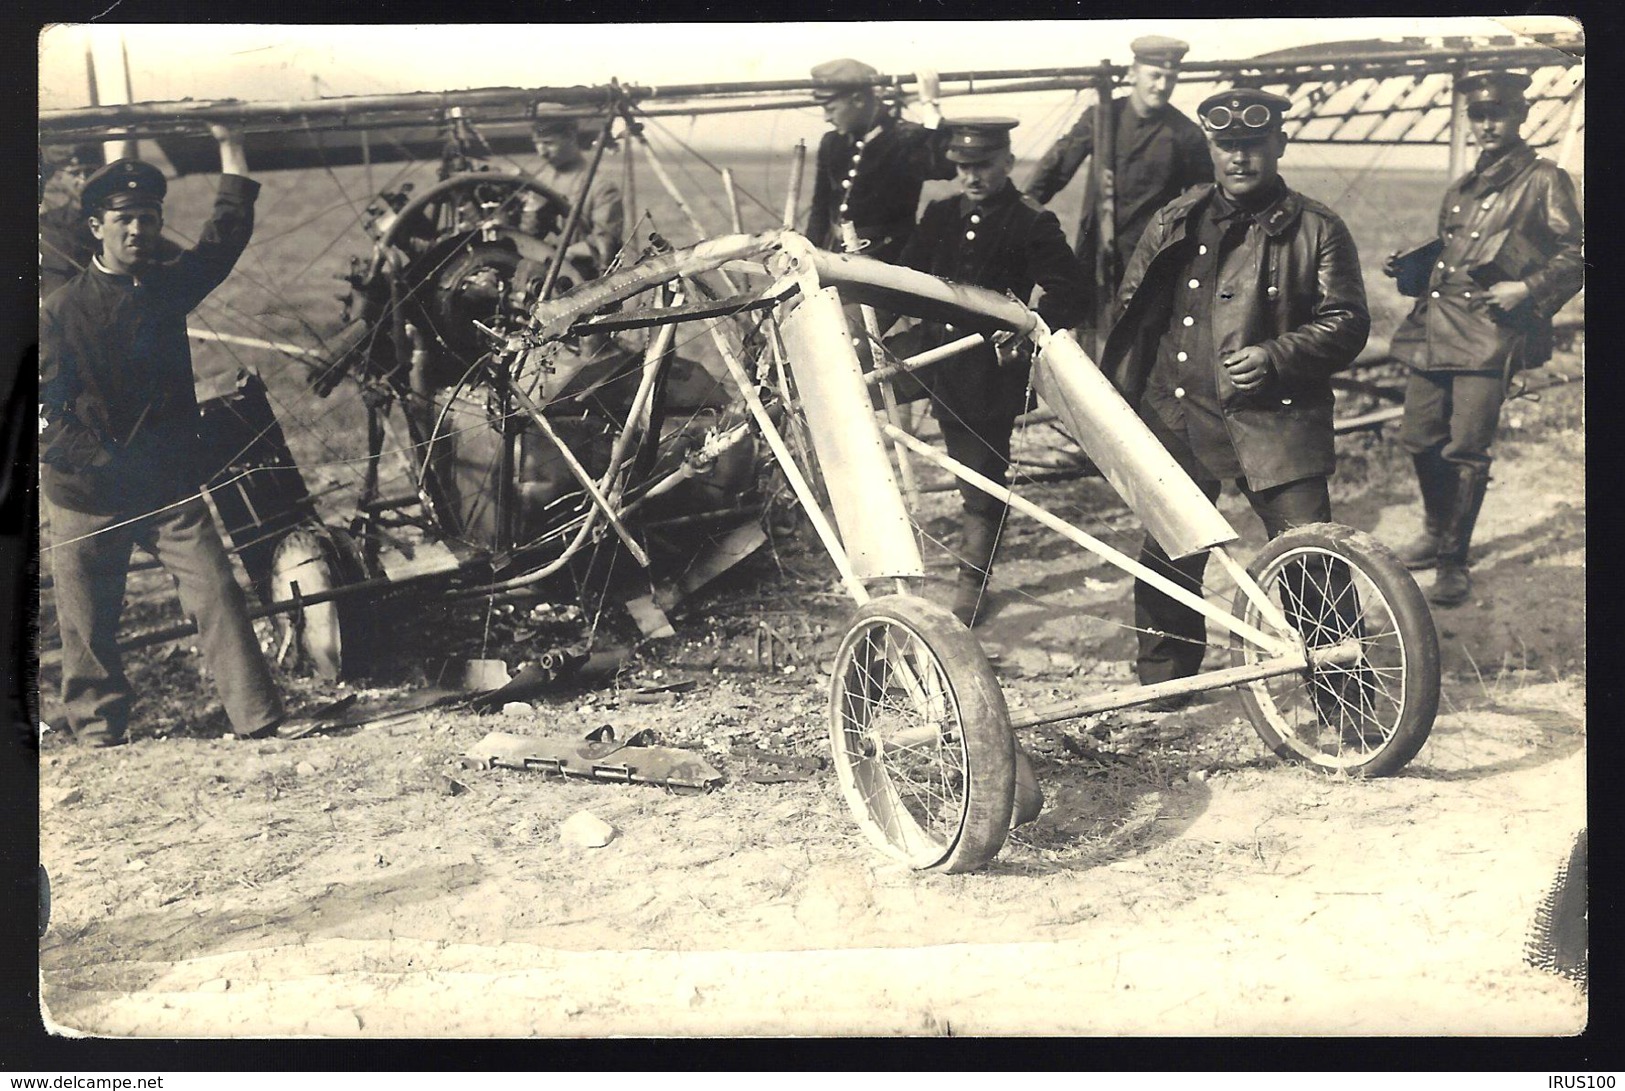 REMILLY 1915 - AVION BIPLAN CRAMÉ - GUERRE DE 14/18 - CENSURE - ZENSUR - CENSORCARD - Foto